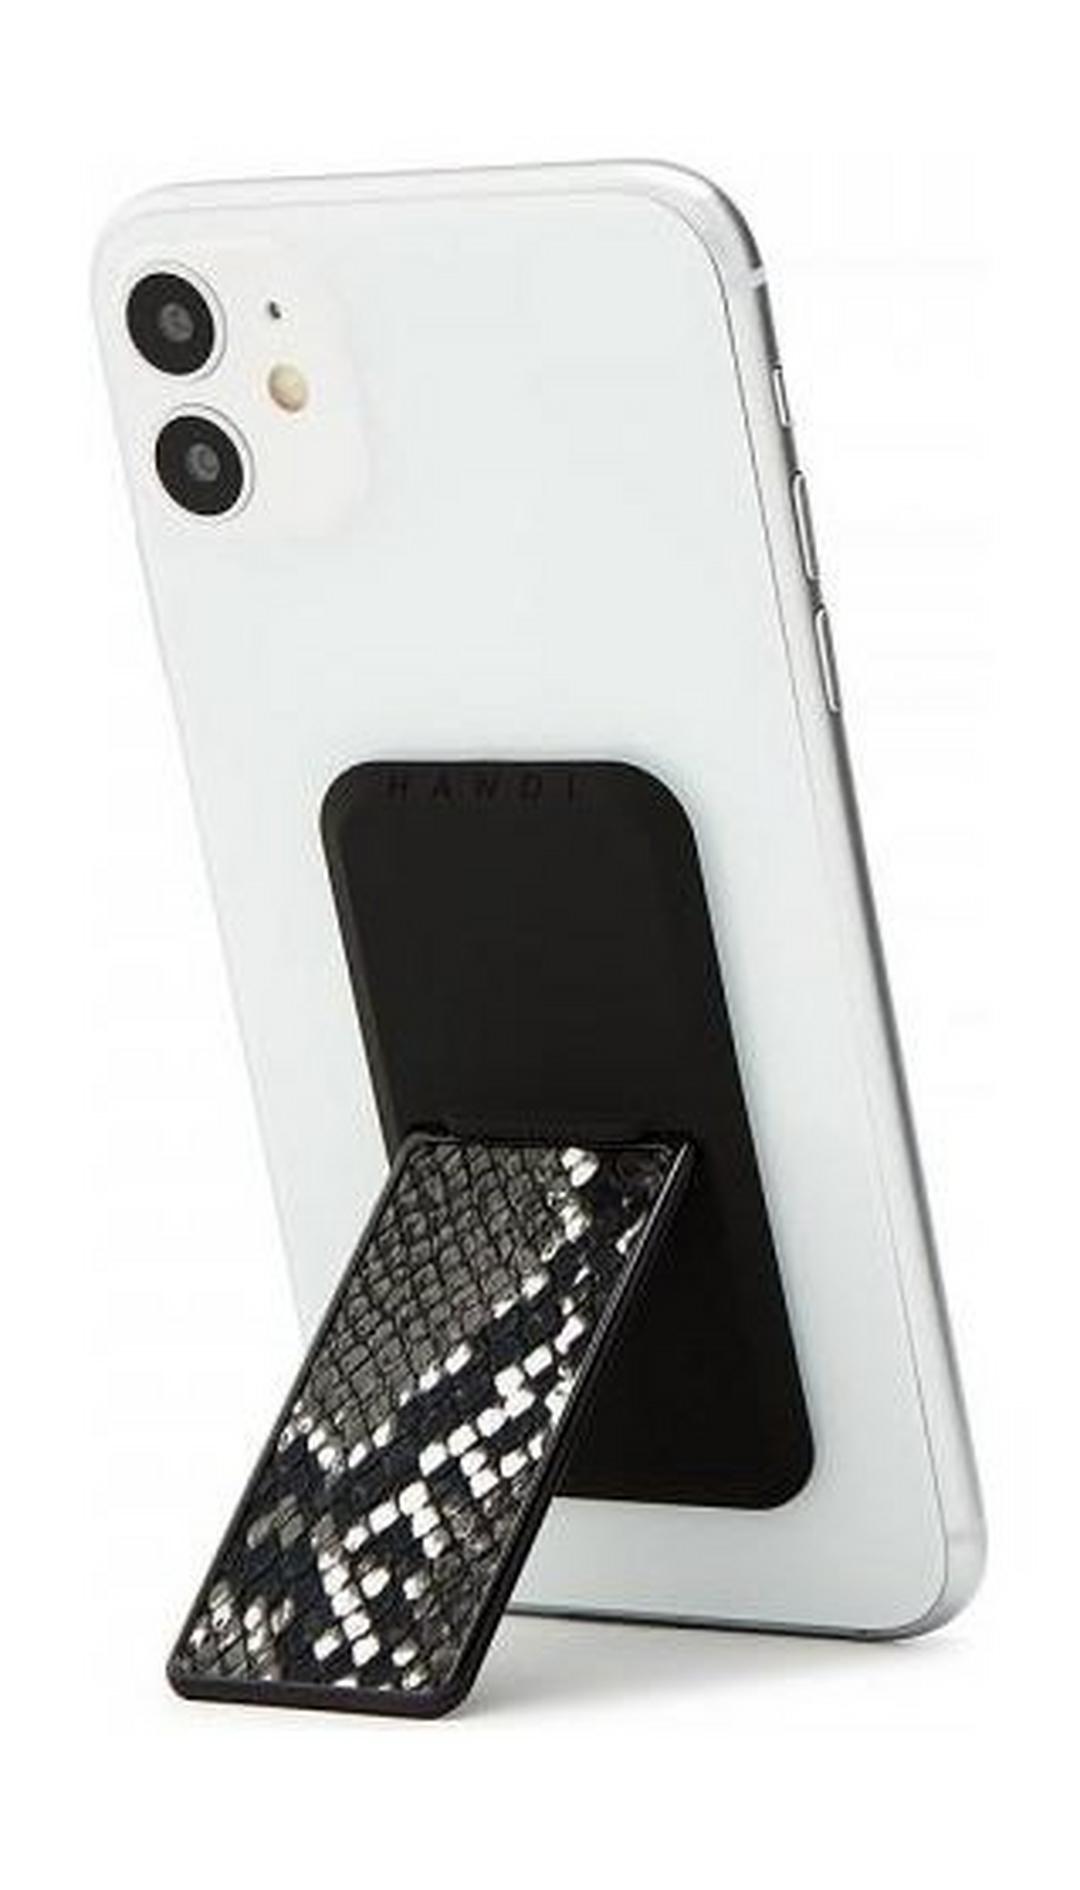 HANDLstick Smartphone Holder Animal Skin - Black/White Snake